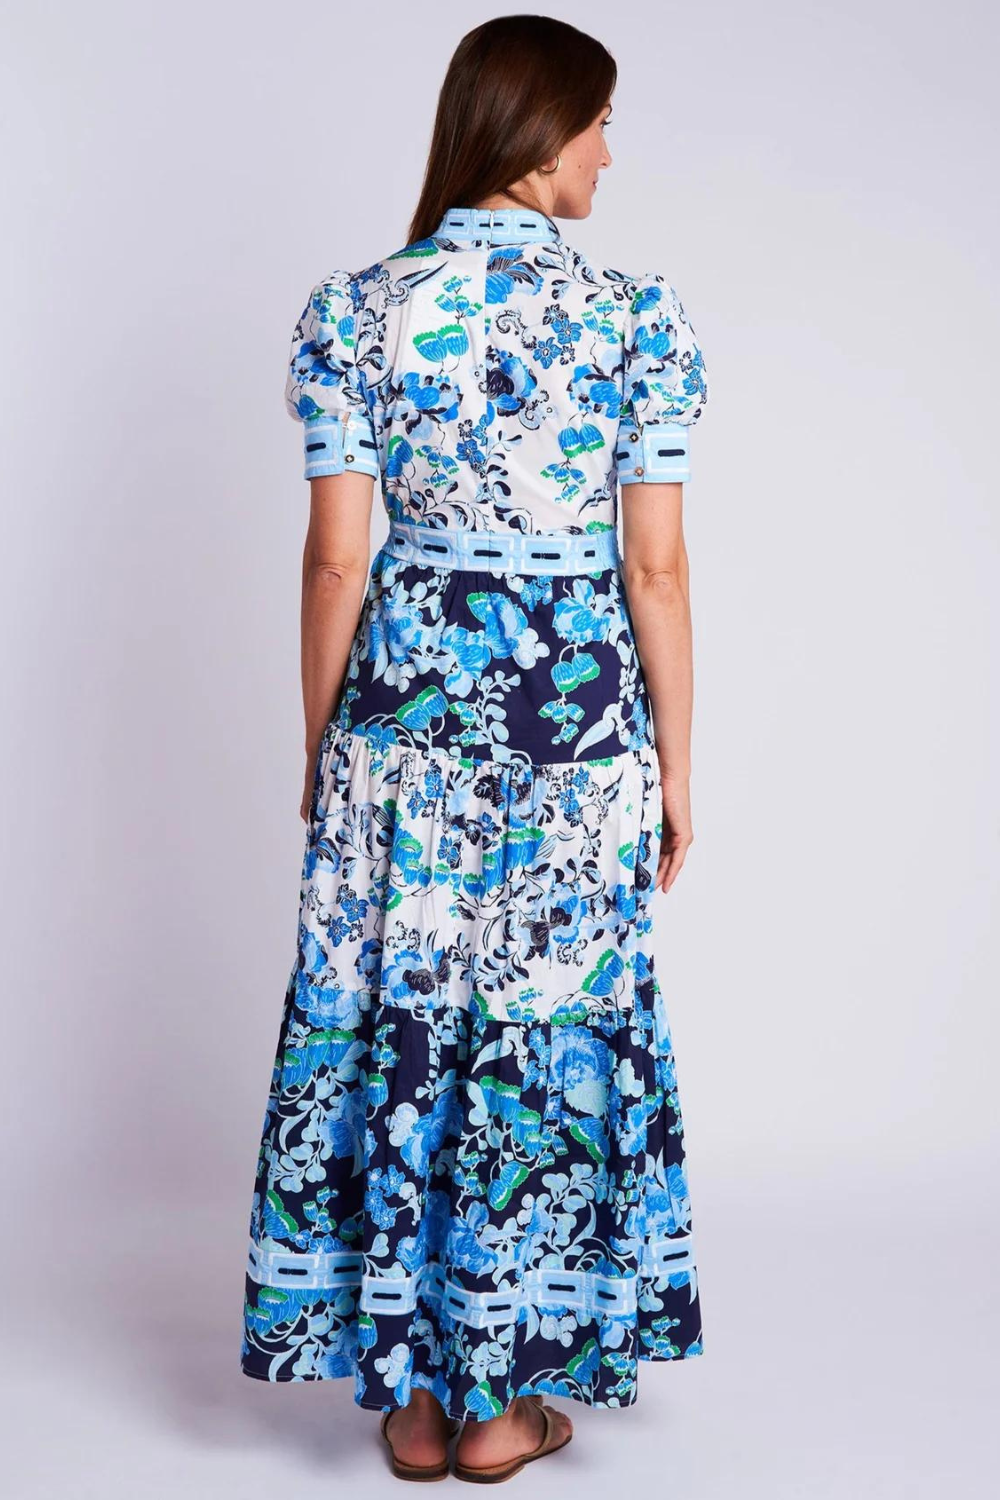 CK Bradley Annabelle Short Sleeve Dress - Cordelia White & Blue